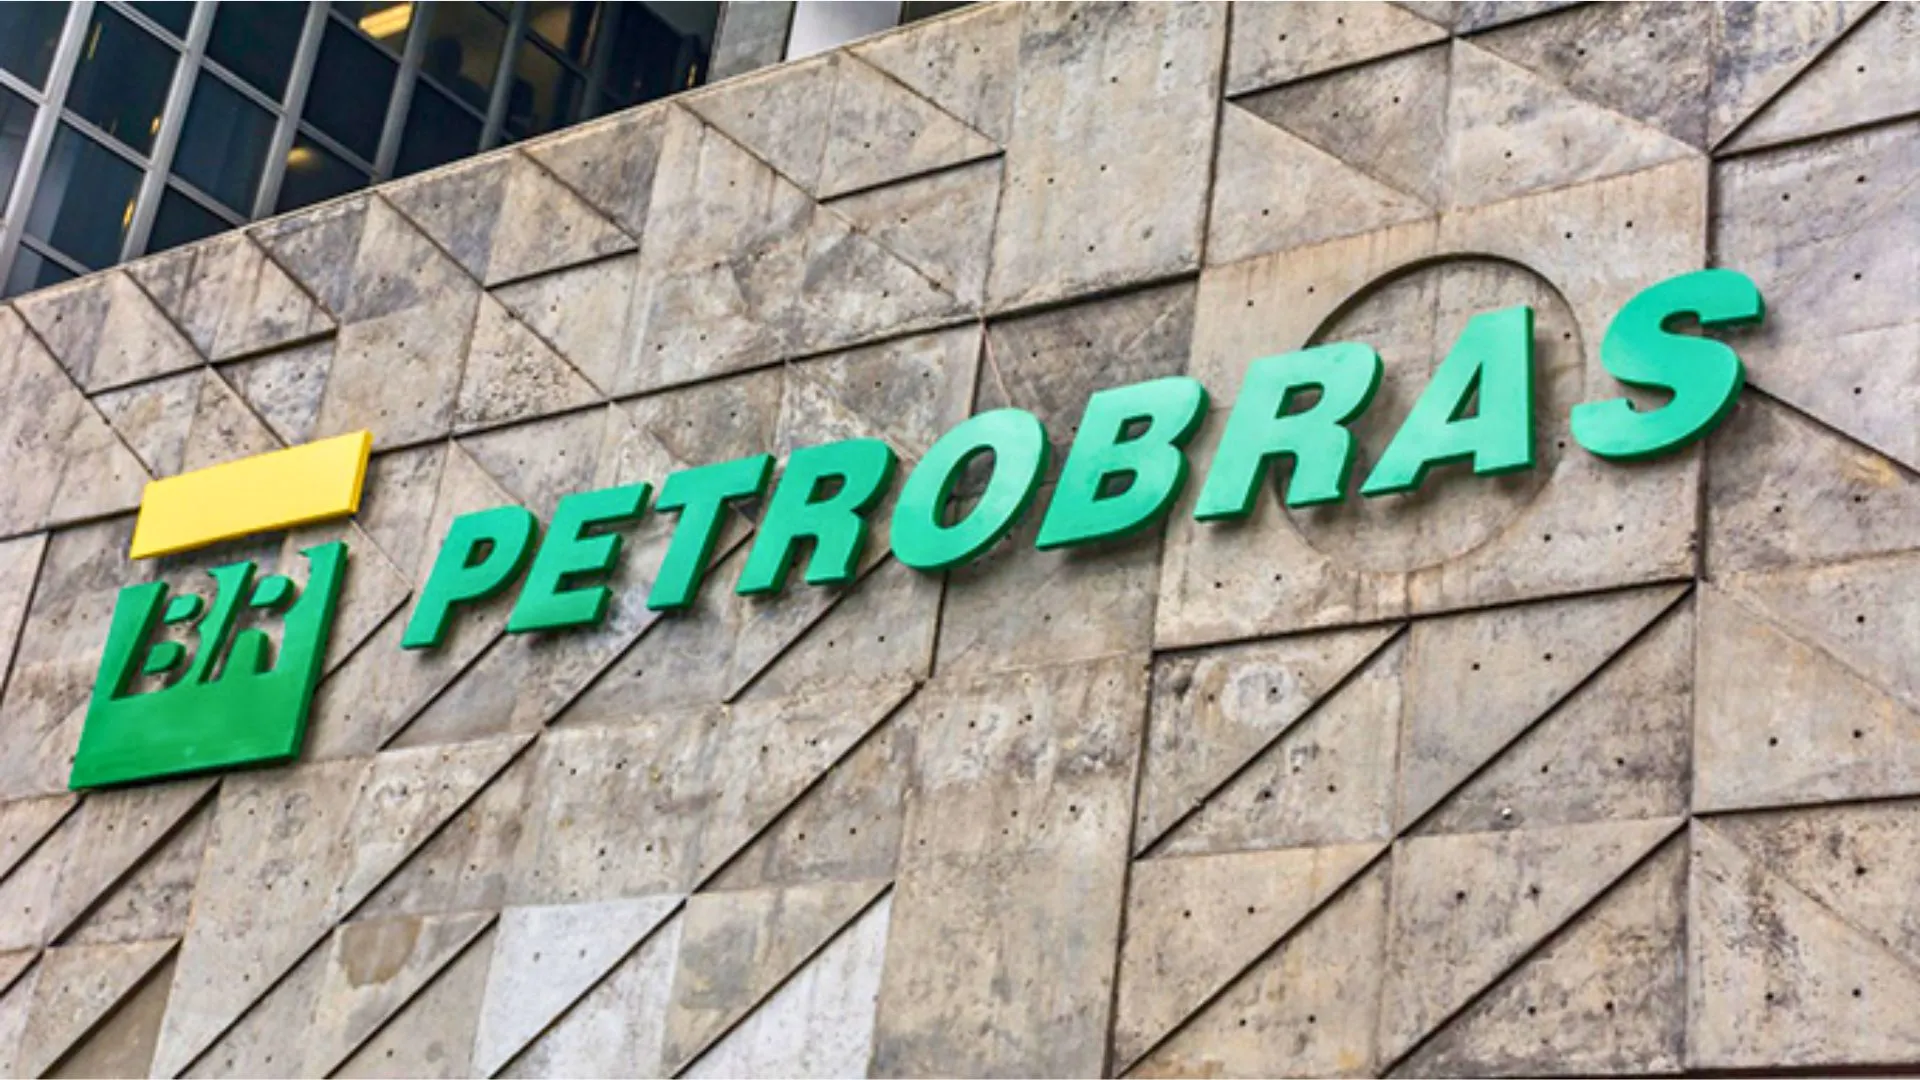 UEG Araucária: Petrobras confirma venda